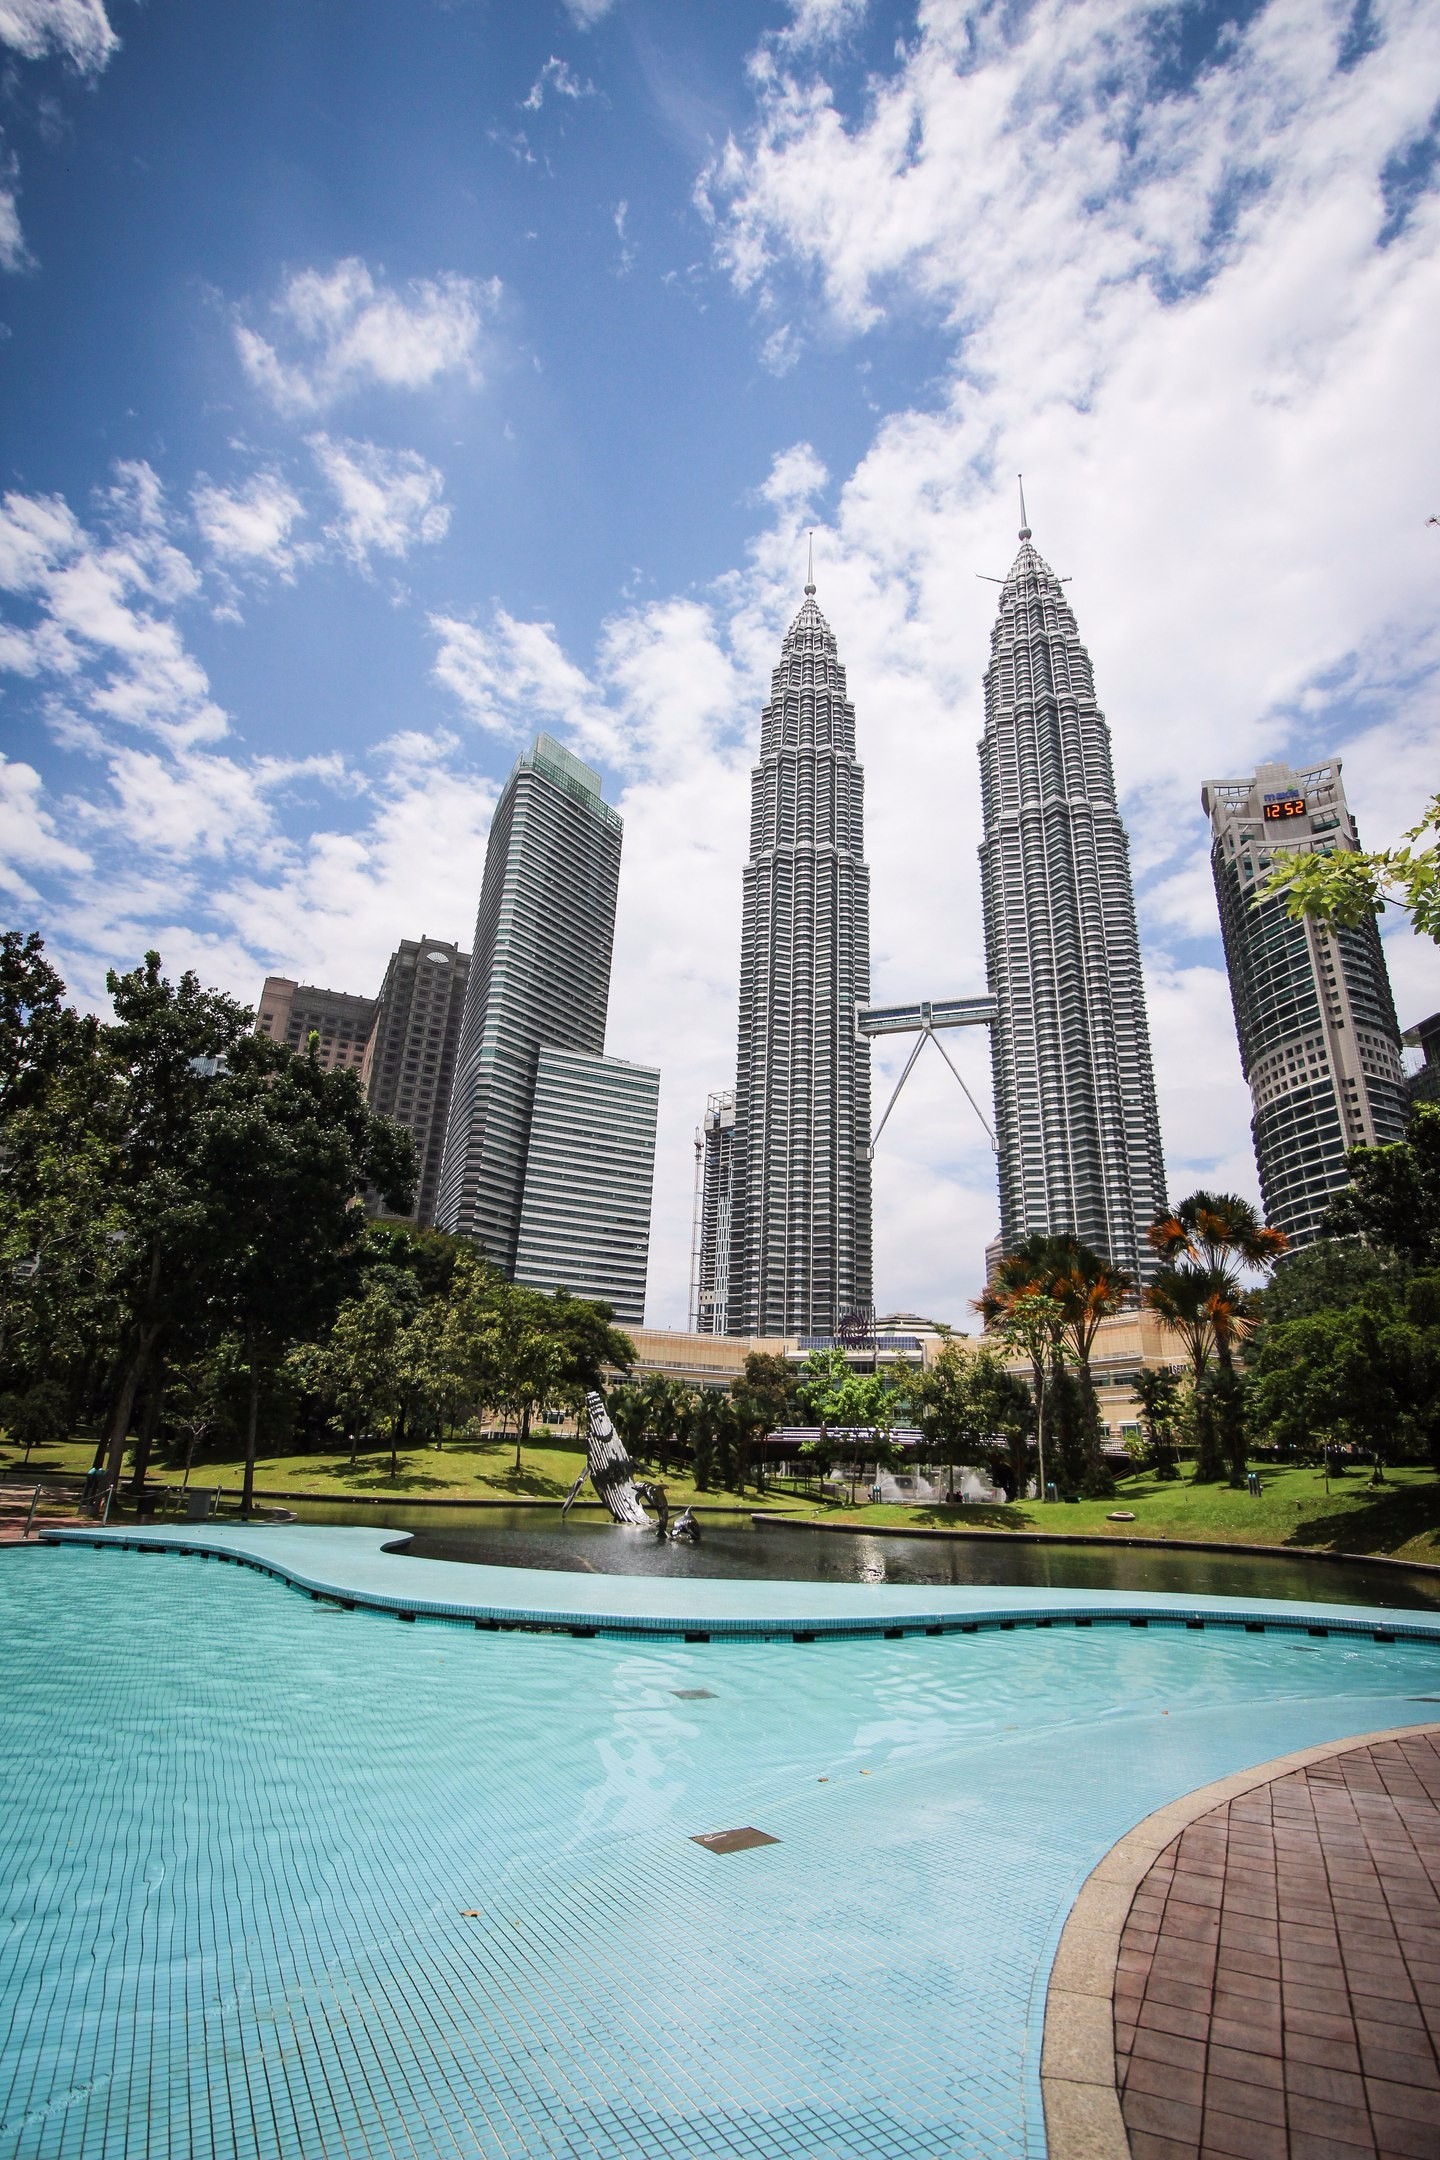 Petronas Twin Towers<br/>
Вид с KLCC парка 